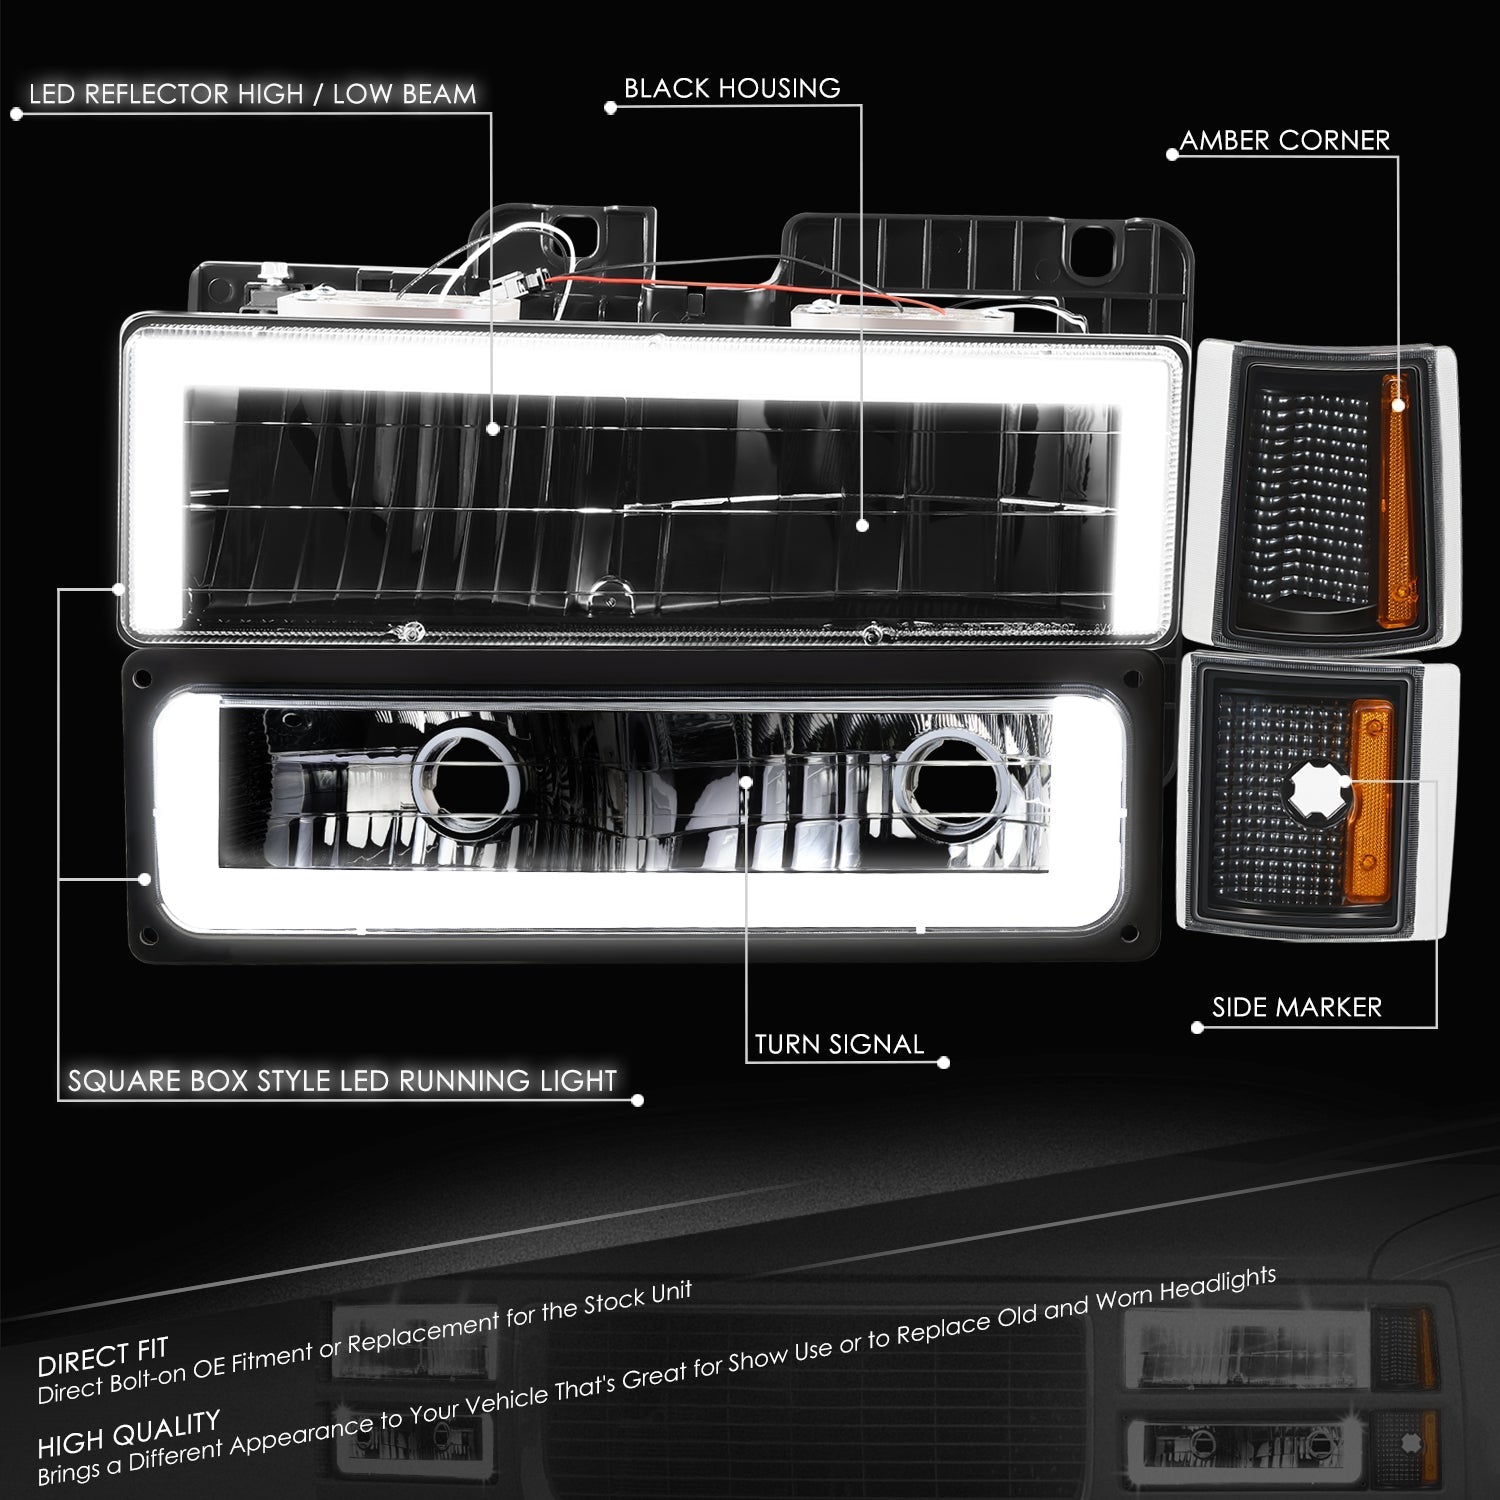 8pcs Square Box LED DRL Headlight Set (Black) <br>94-00 GMC C10 C/K Pickup, Suburban, Yukon